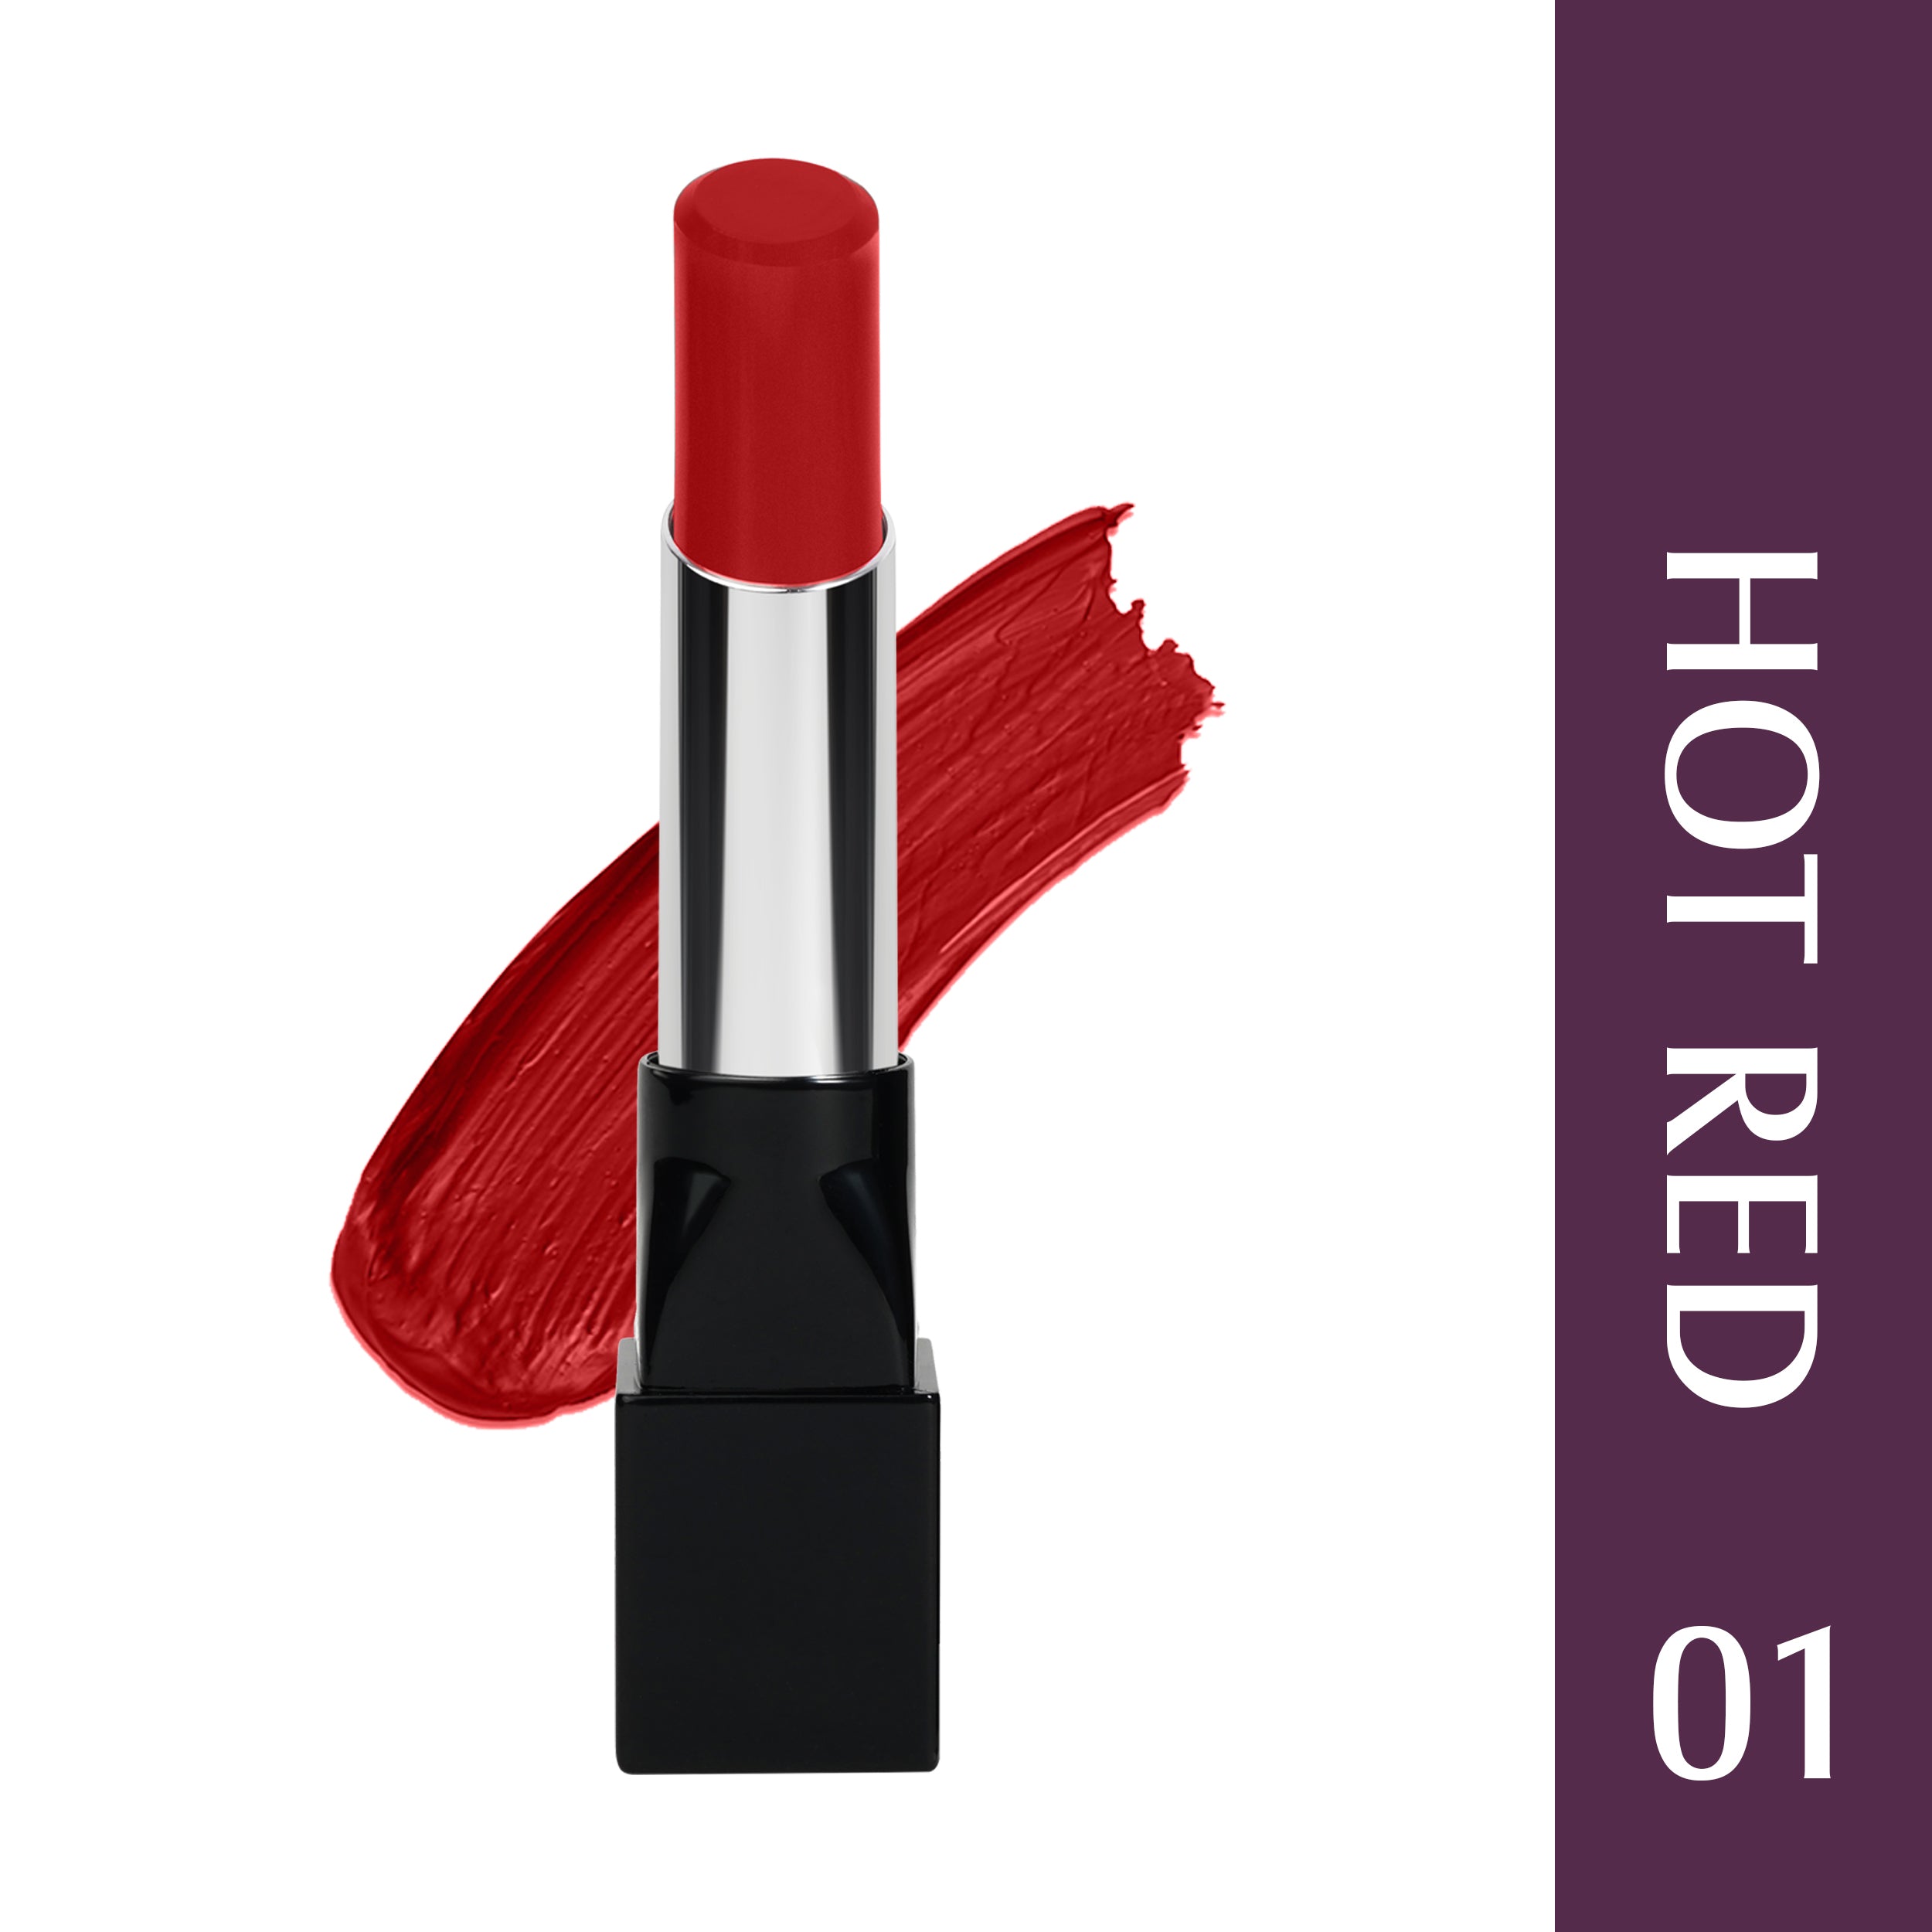 Glam21 Ultra Velvet Lipstick  Long-lasting stay on lips Lovely matte finish, 2.5gm Hot Red-01